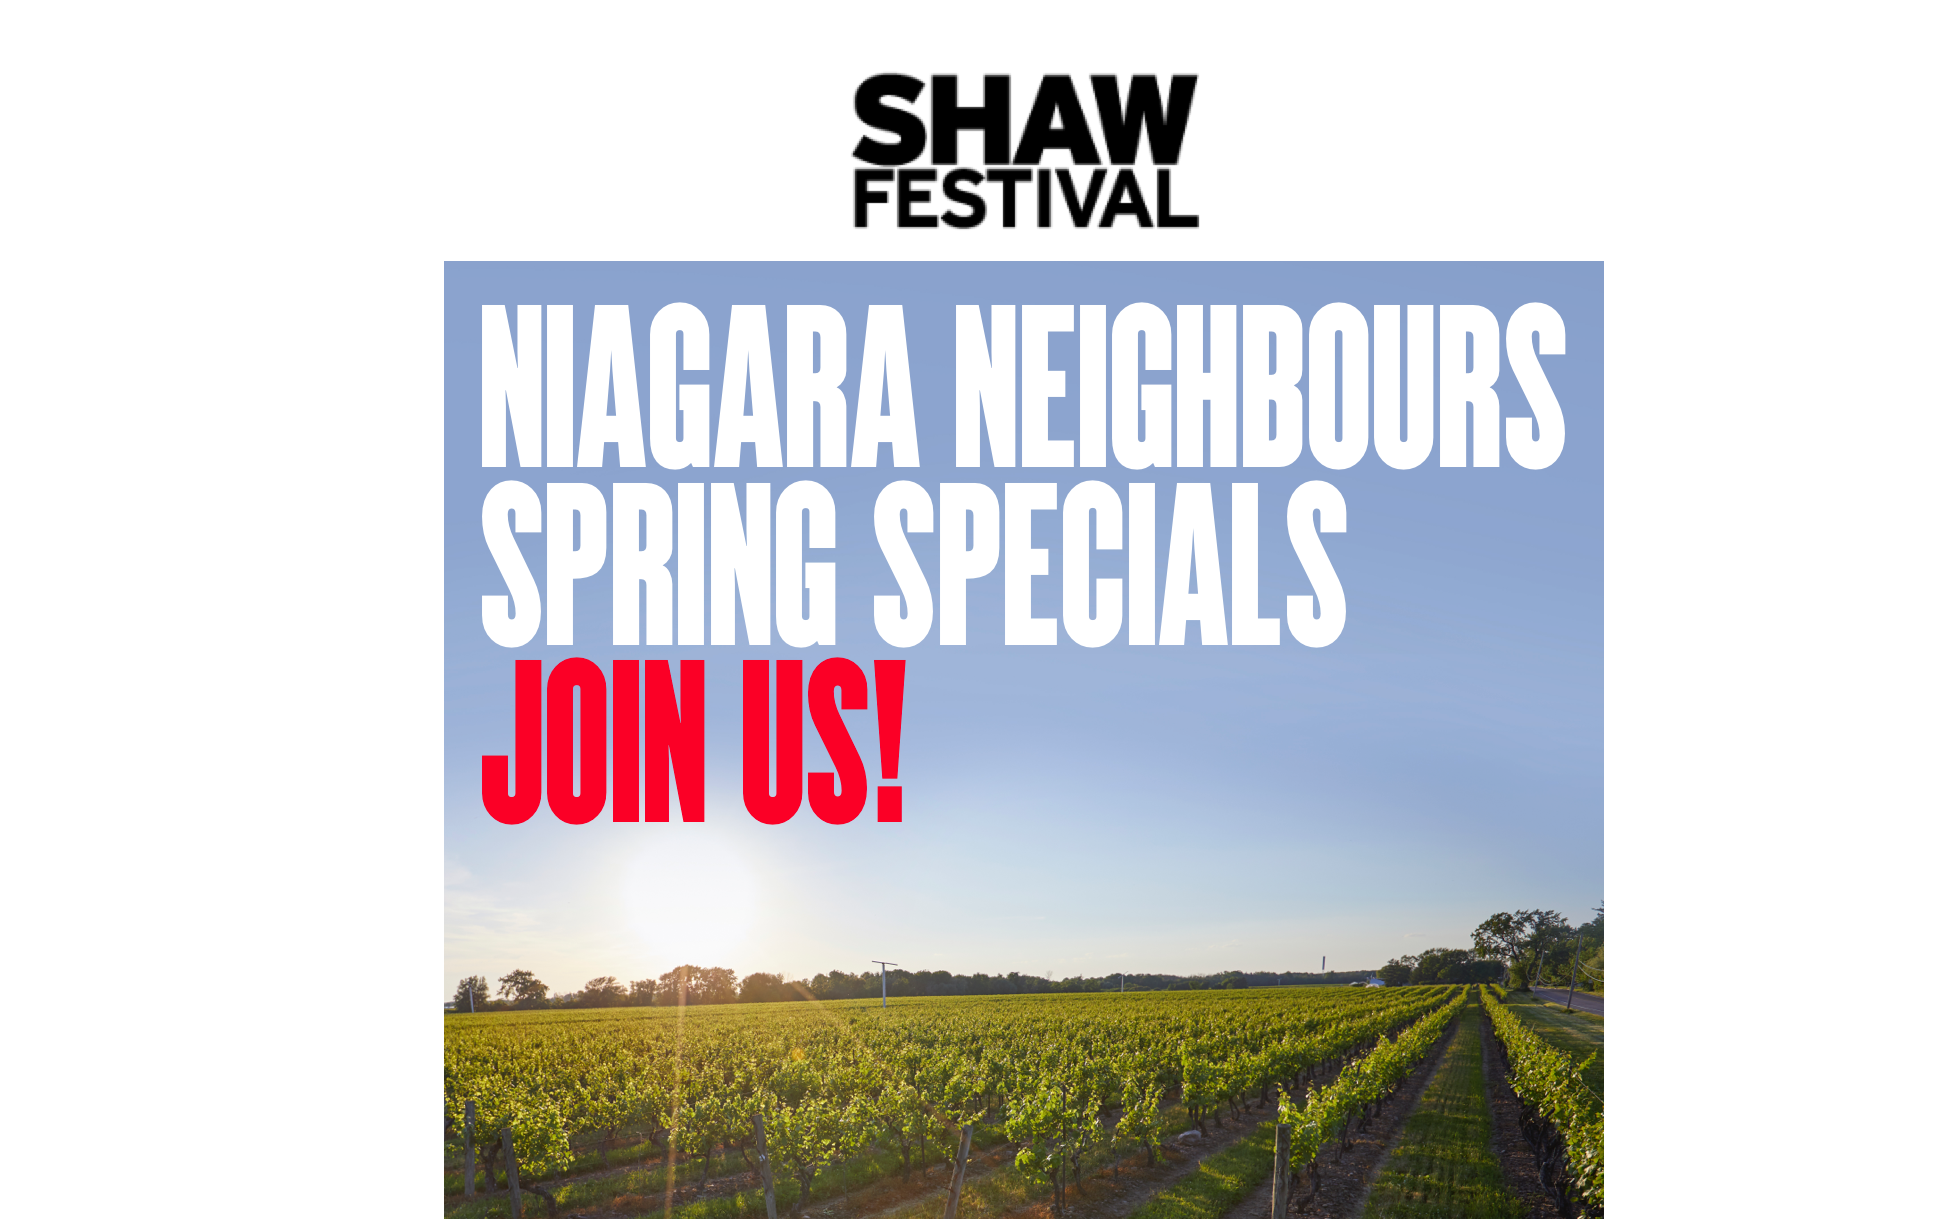 Shaw Festival Niagara Neighbours Spring Specials!